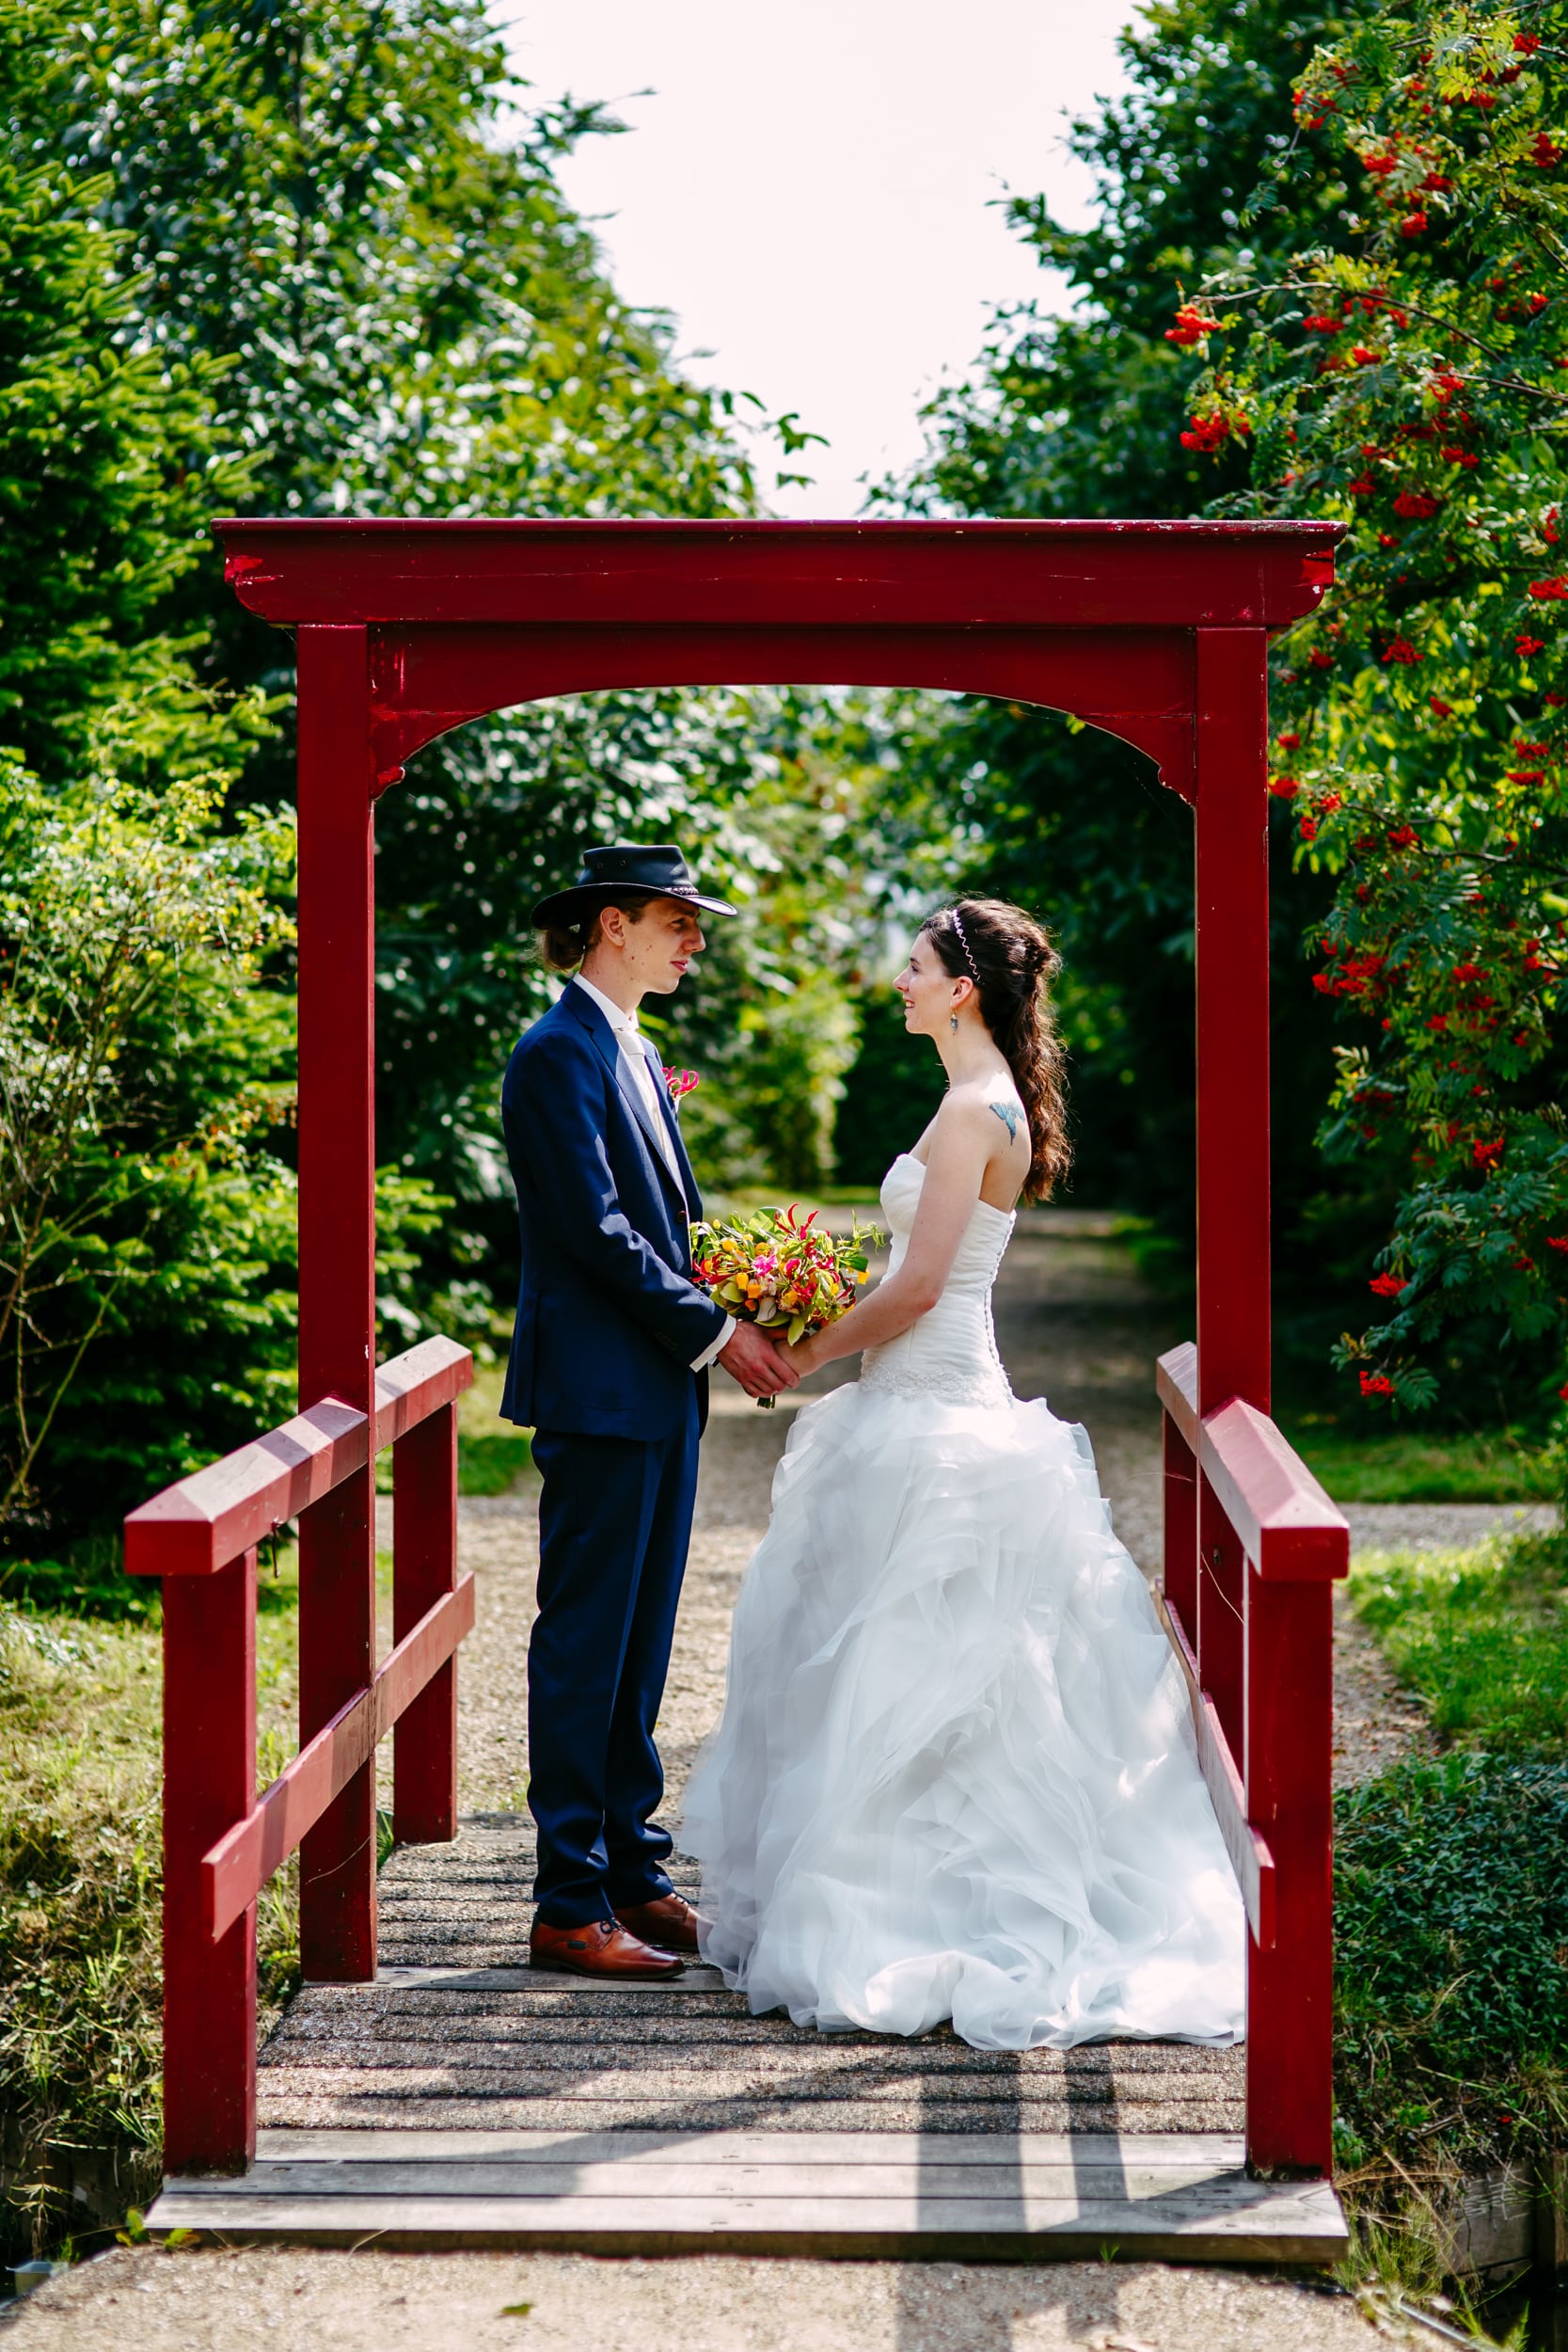 Een budgetbruid en -bruidegom staan op een rode brug in een tuin en genieten van hun goedkoop trouwen.